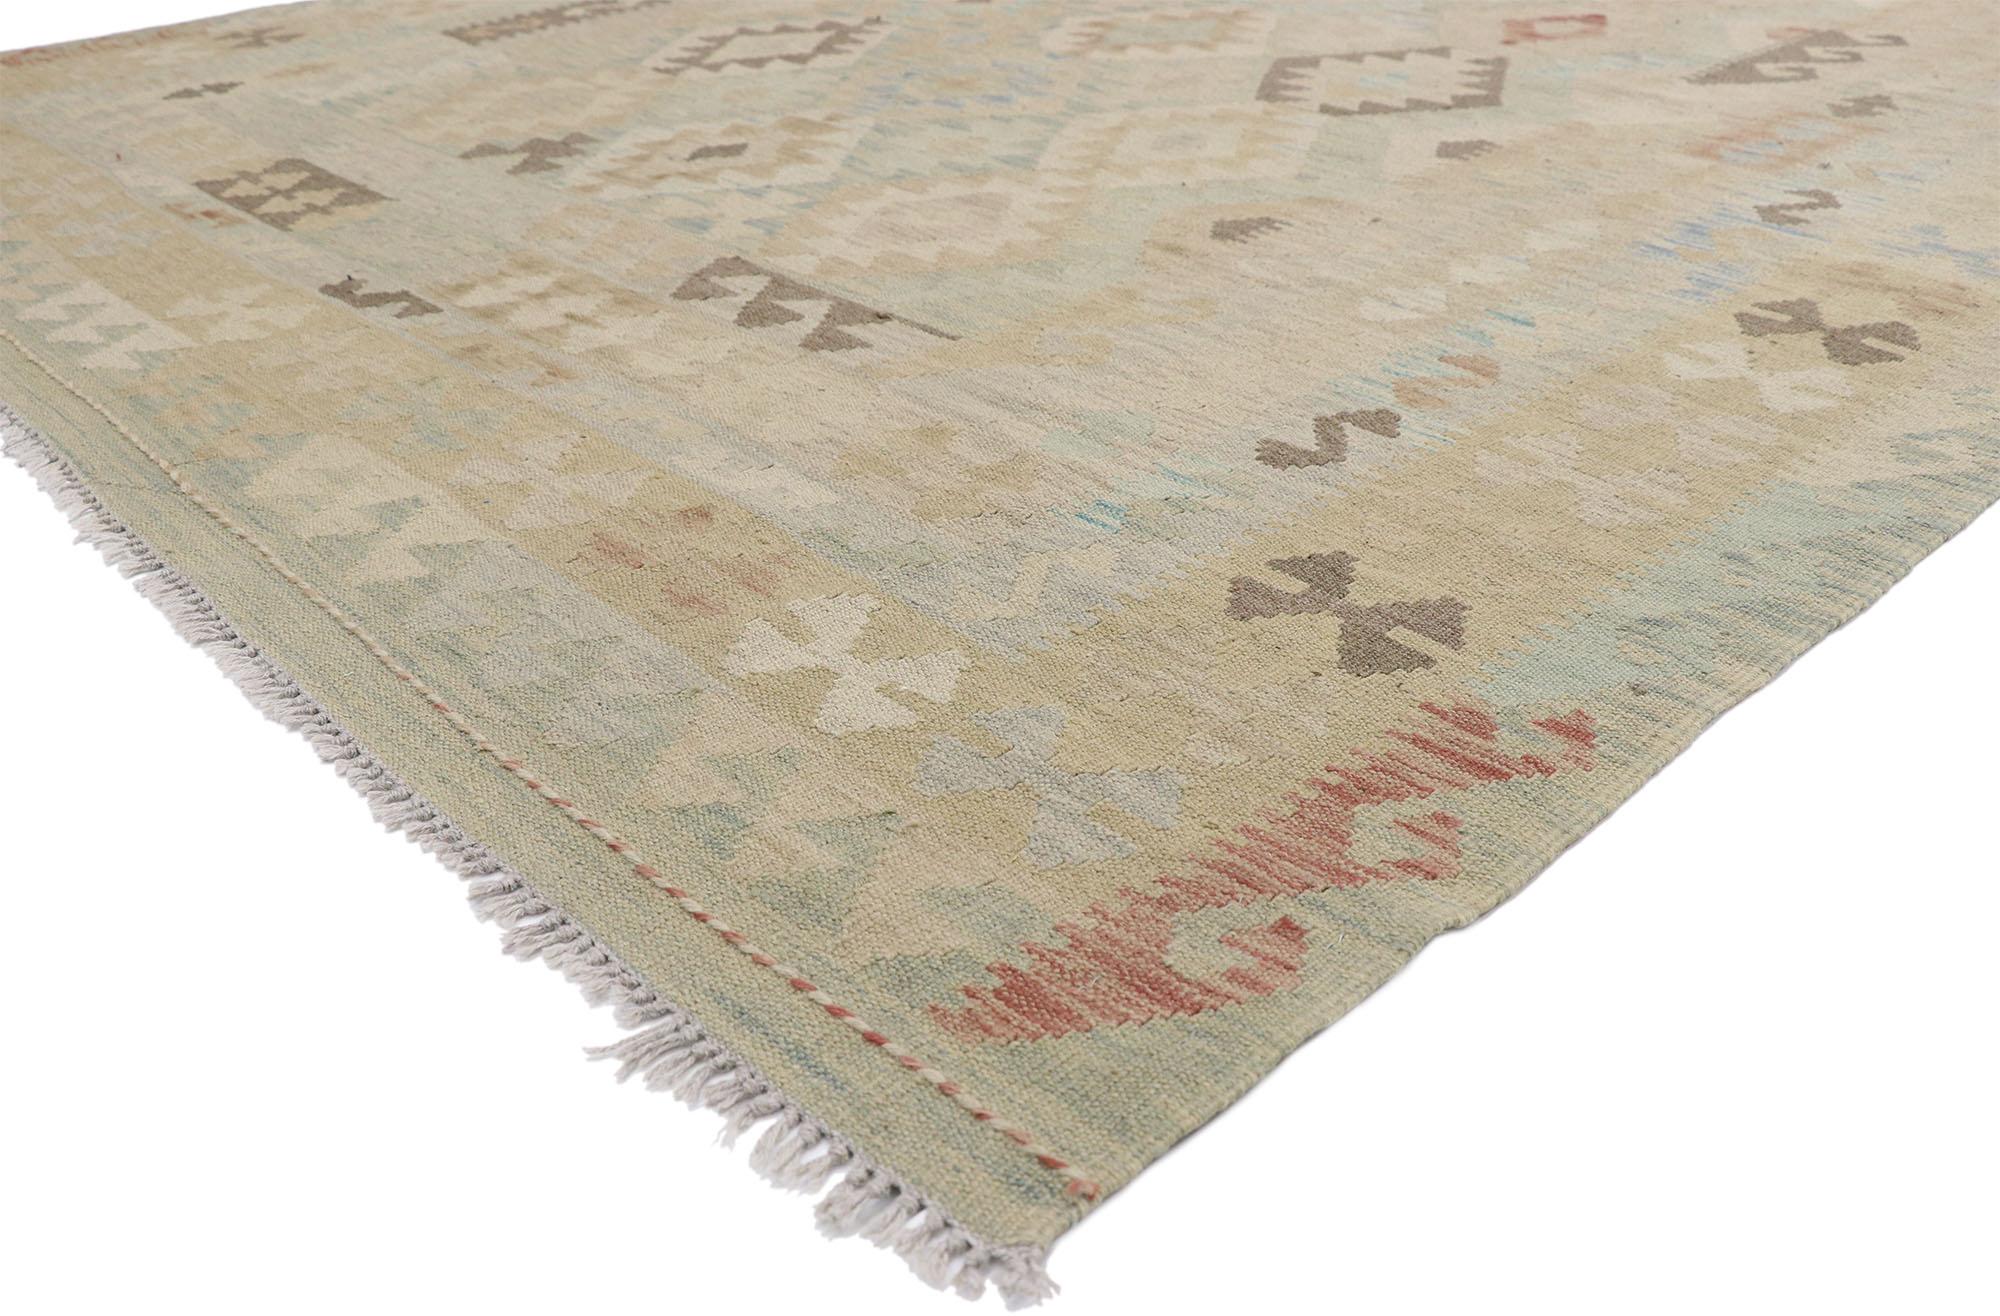 80118 Vintage Afghani Kilim Rug, 06'08 x 09'09. Dans ce tapis kilim afghan vintage en laine tissé à la main, le Design contemporain de Santa Fe s'entrelace avec le style By Design Modern, formant une fusion harmonieuse qui rend hommage au riche